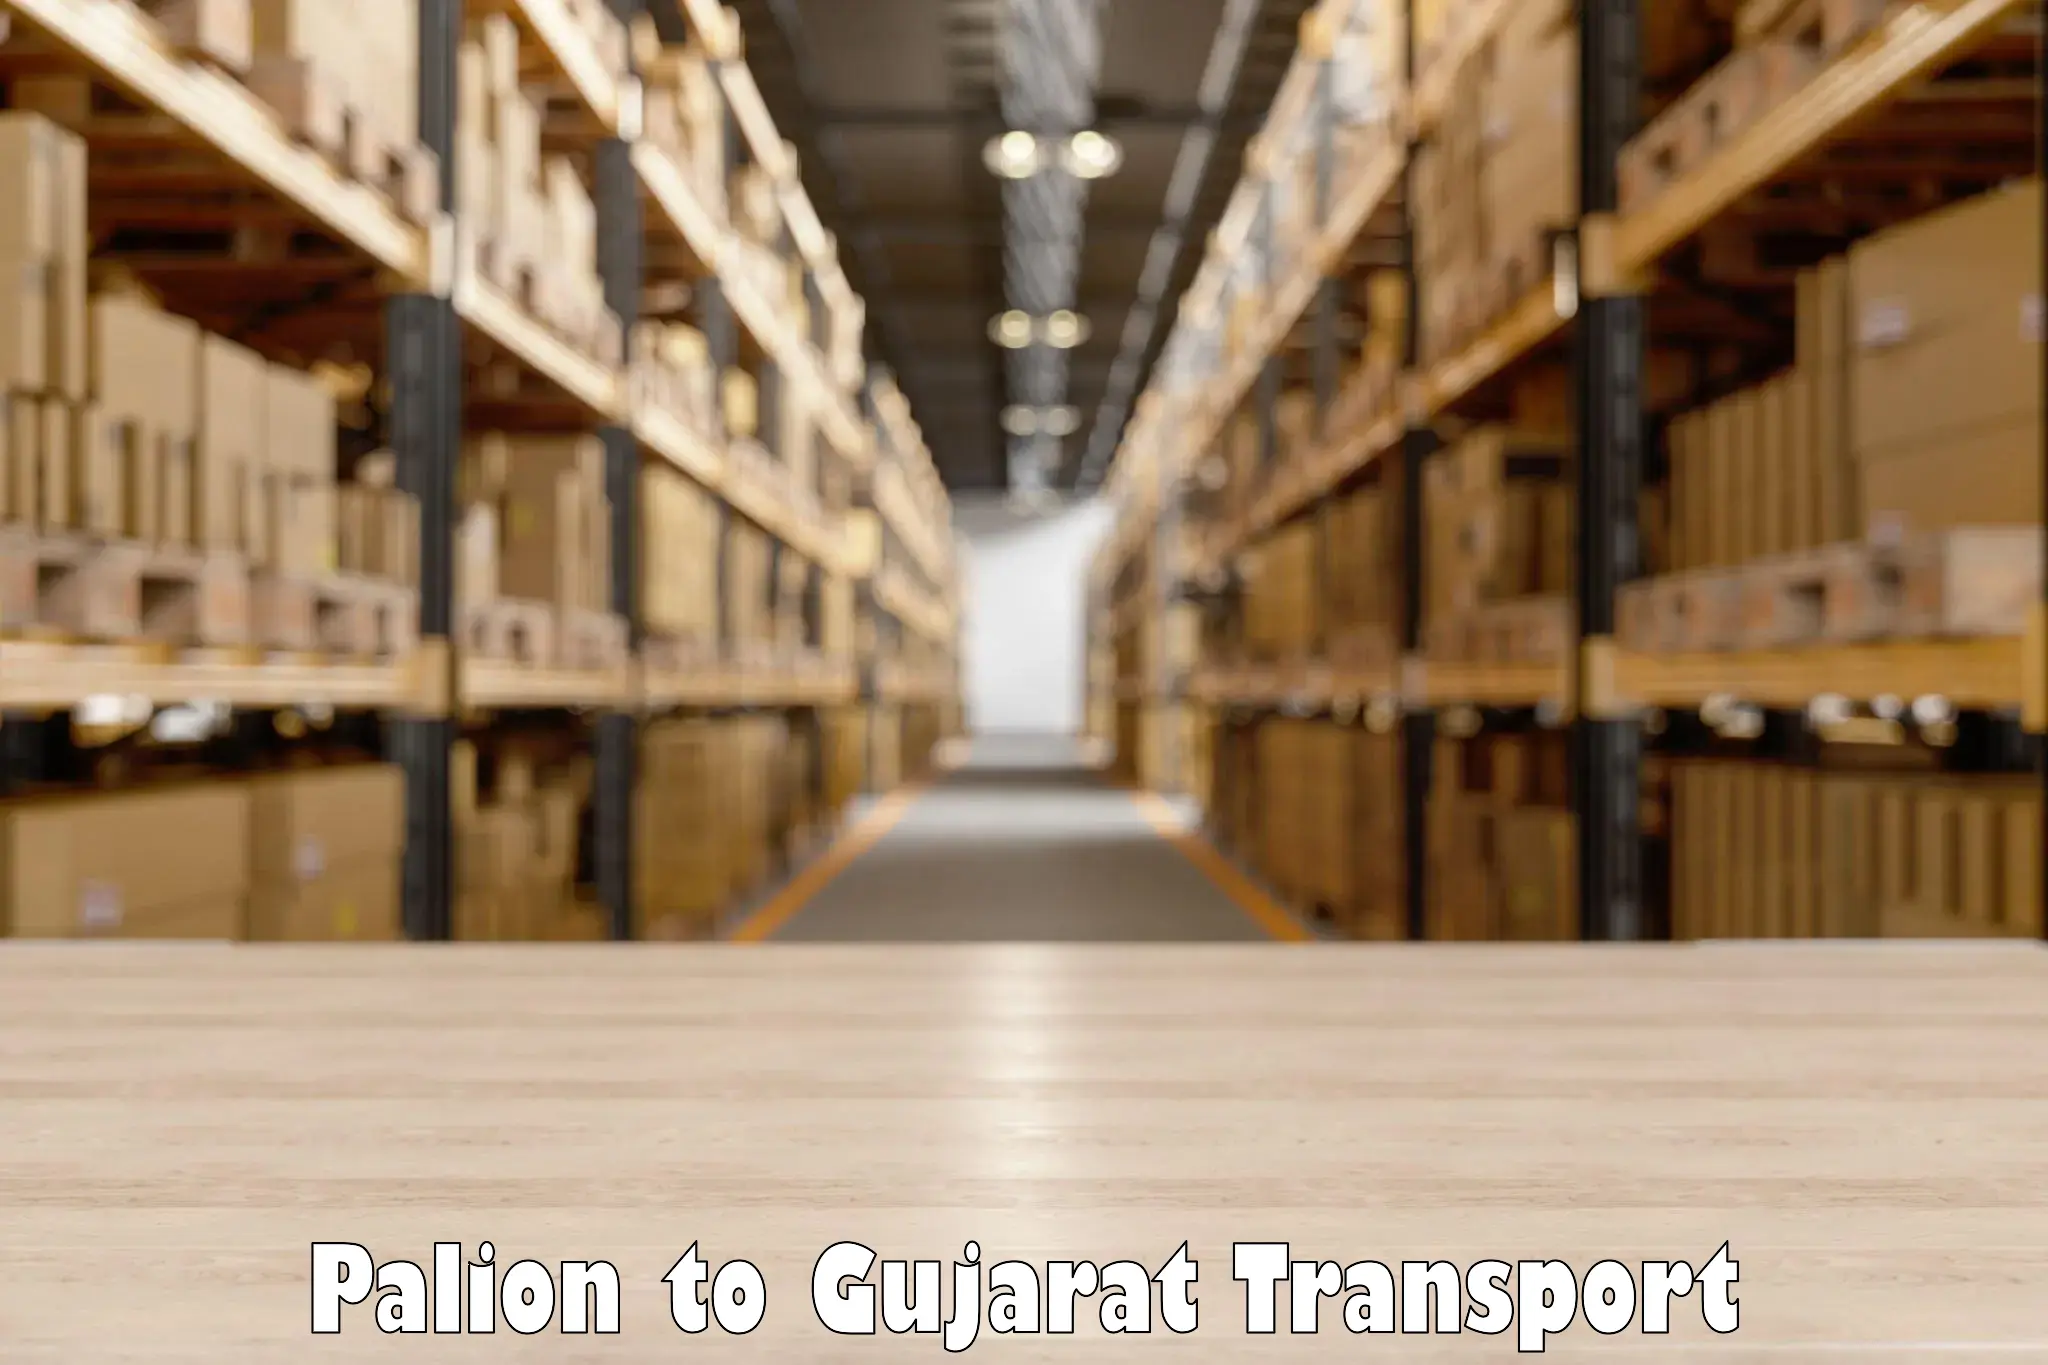 Transport in sharing Palion to Jamjodhpur